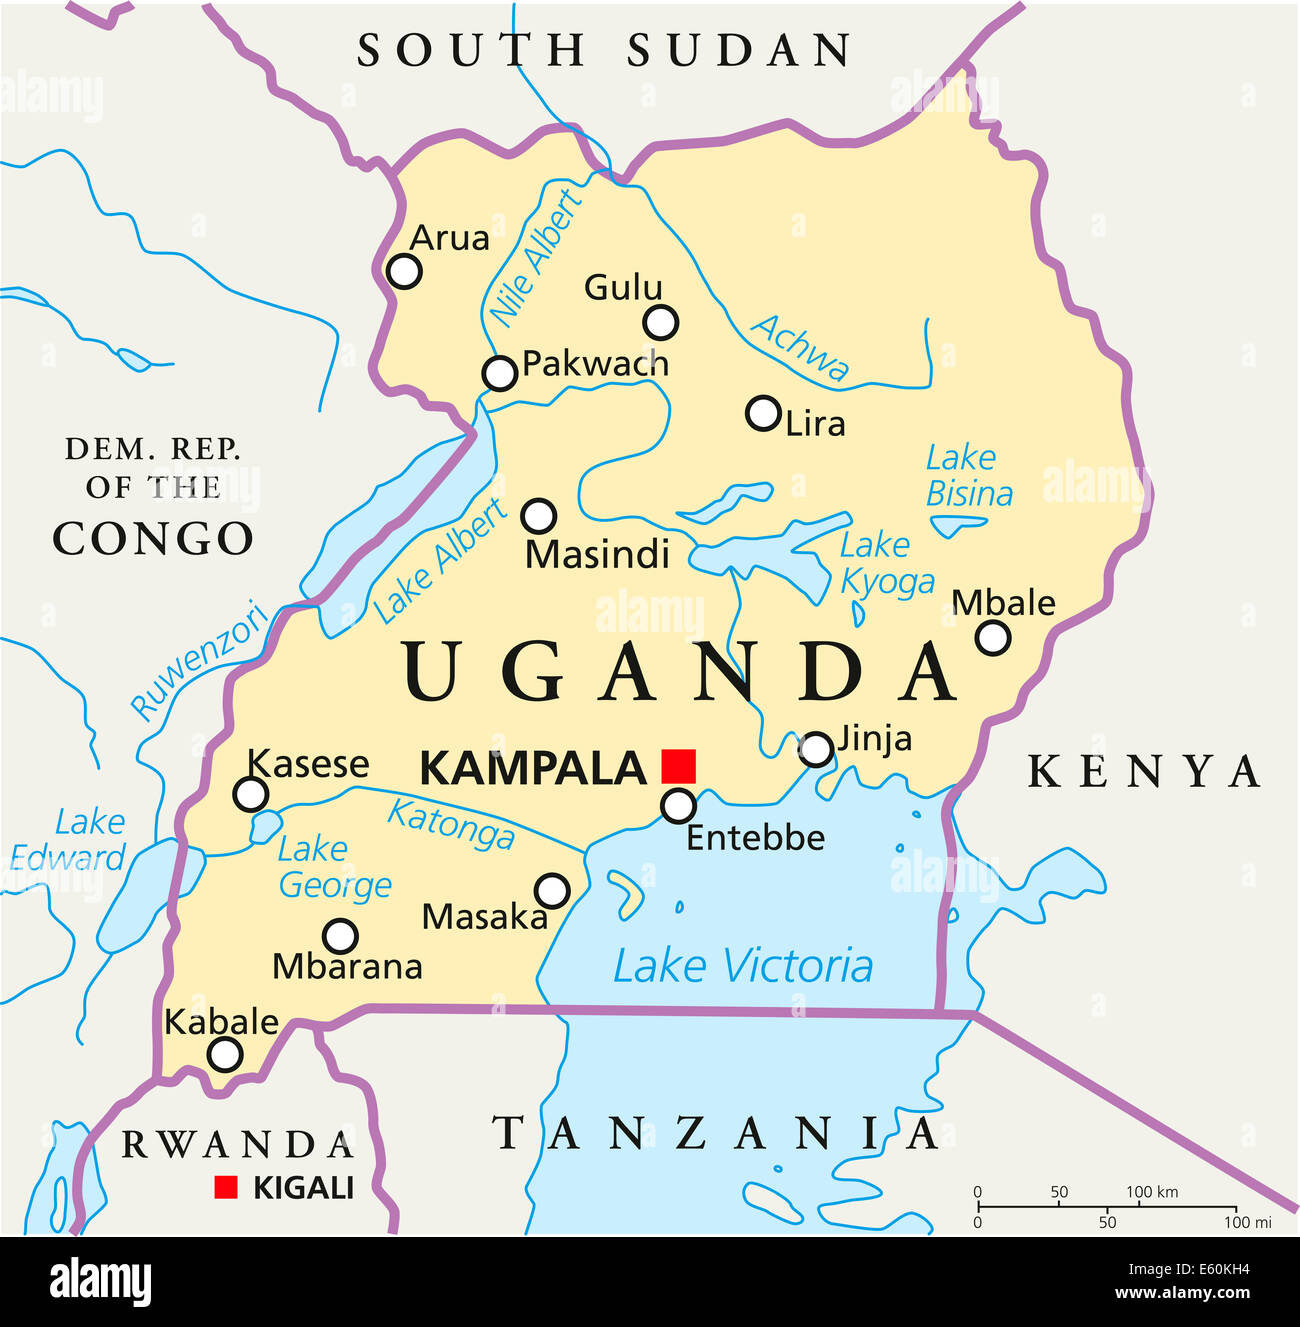 L’Ouganda signale une grippe virale sur son territoire national